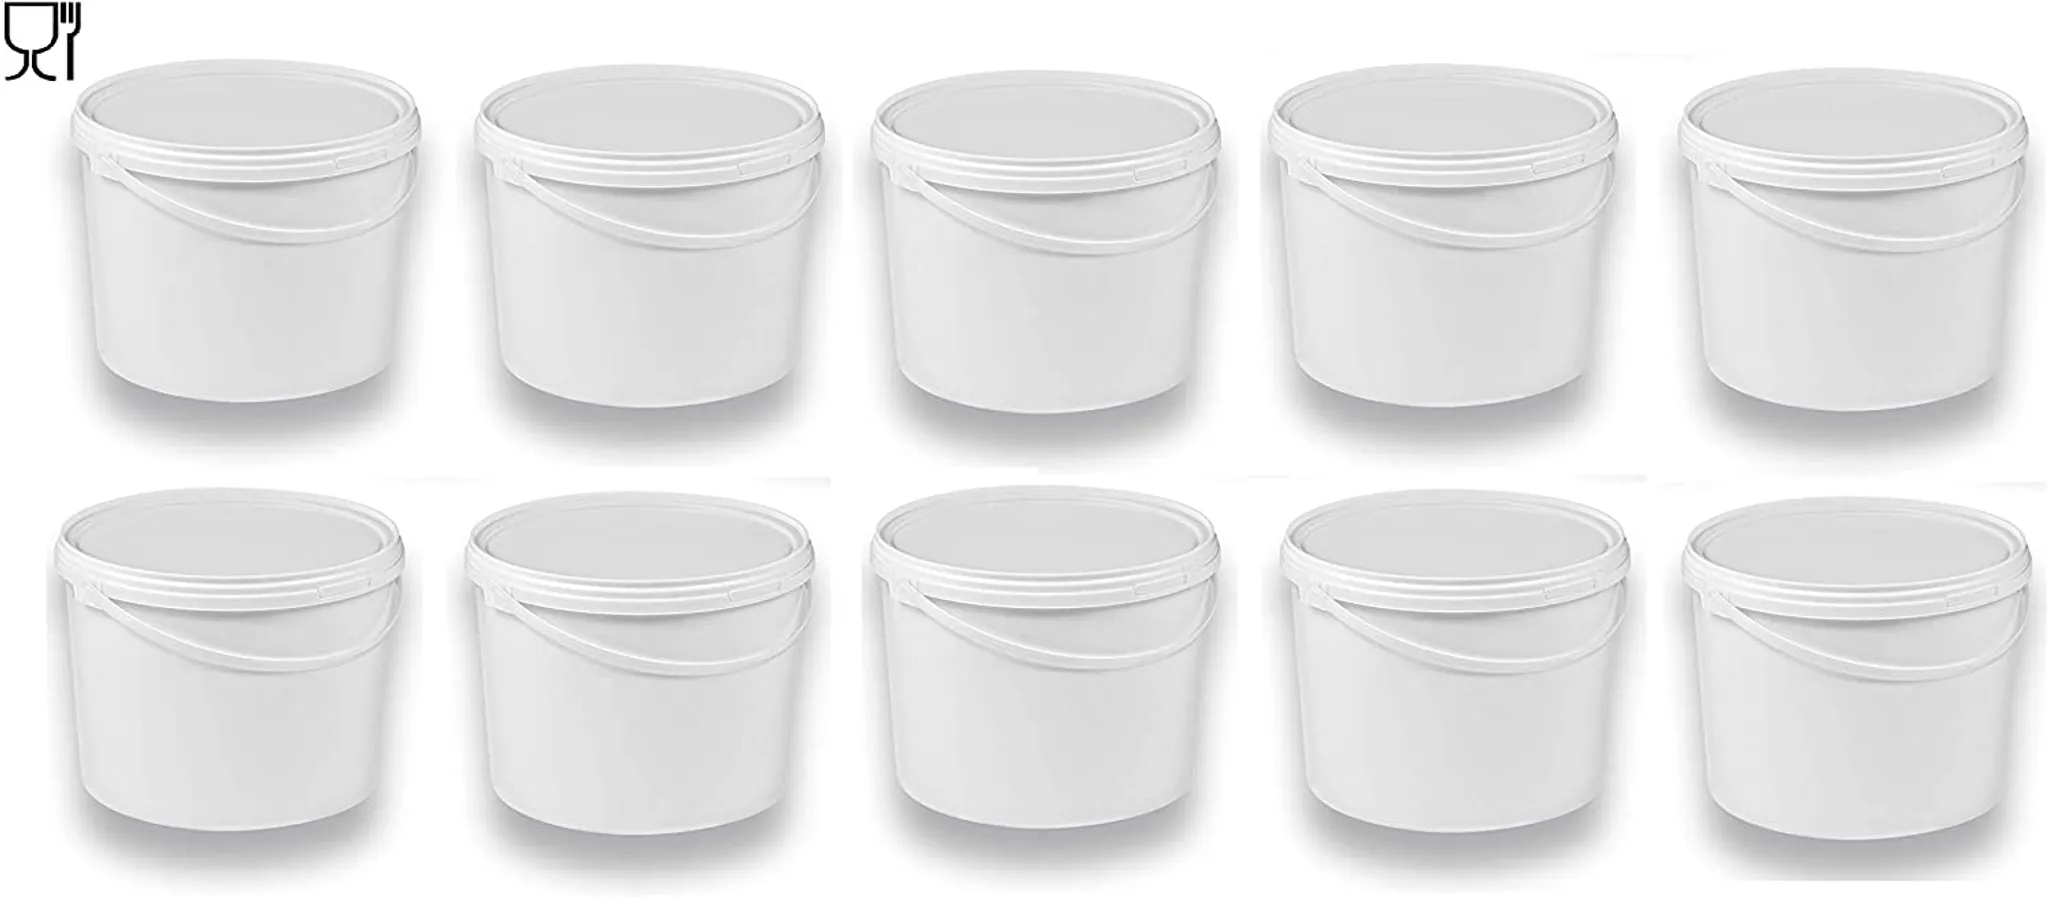 Leereimer für Mehl Honigeimer Kunststoffeimer mit Lebensmittelfreigabe 3 Stück Wassereimer 3 x 10 Liter Eimer mit Deckel weiß stapelbarerer Milch-/Vorratseimer Lebensmittelechte Behälter 